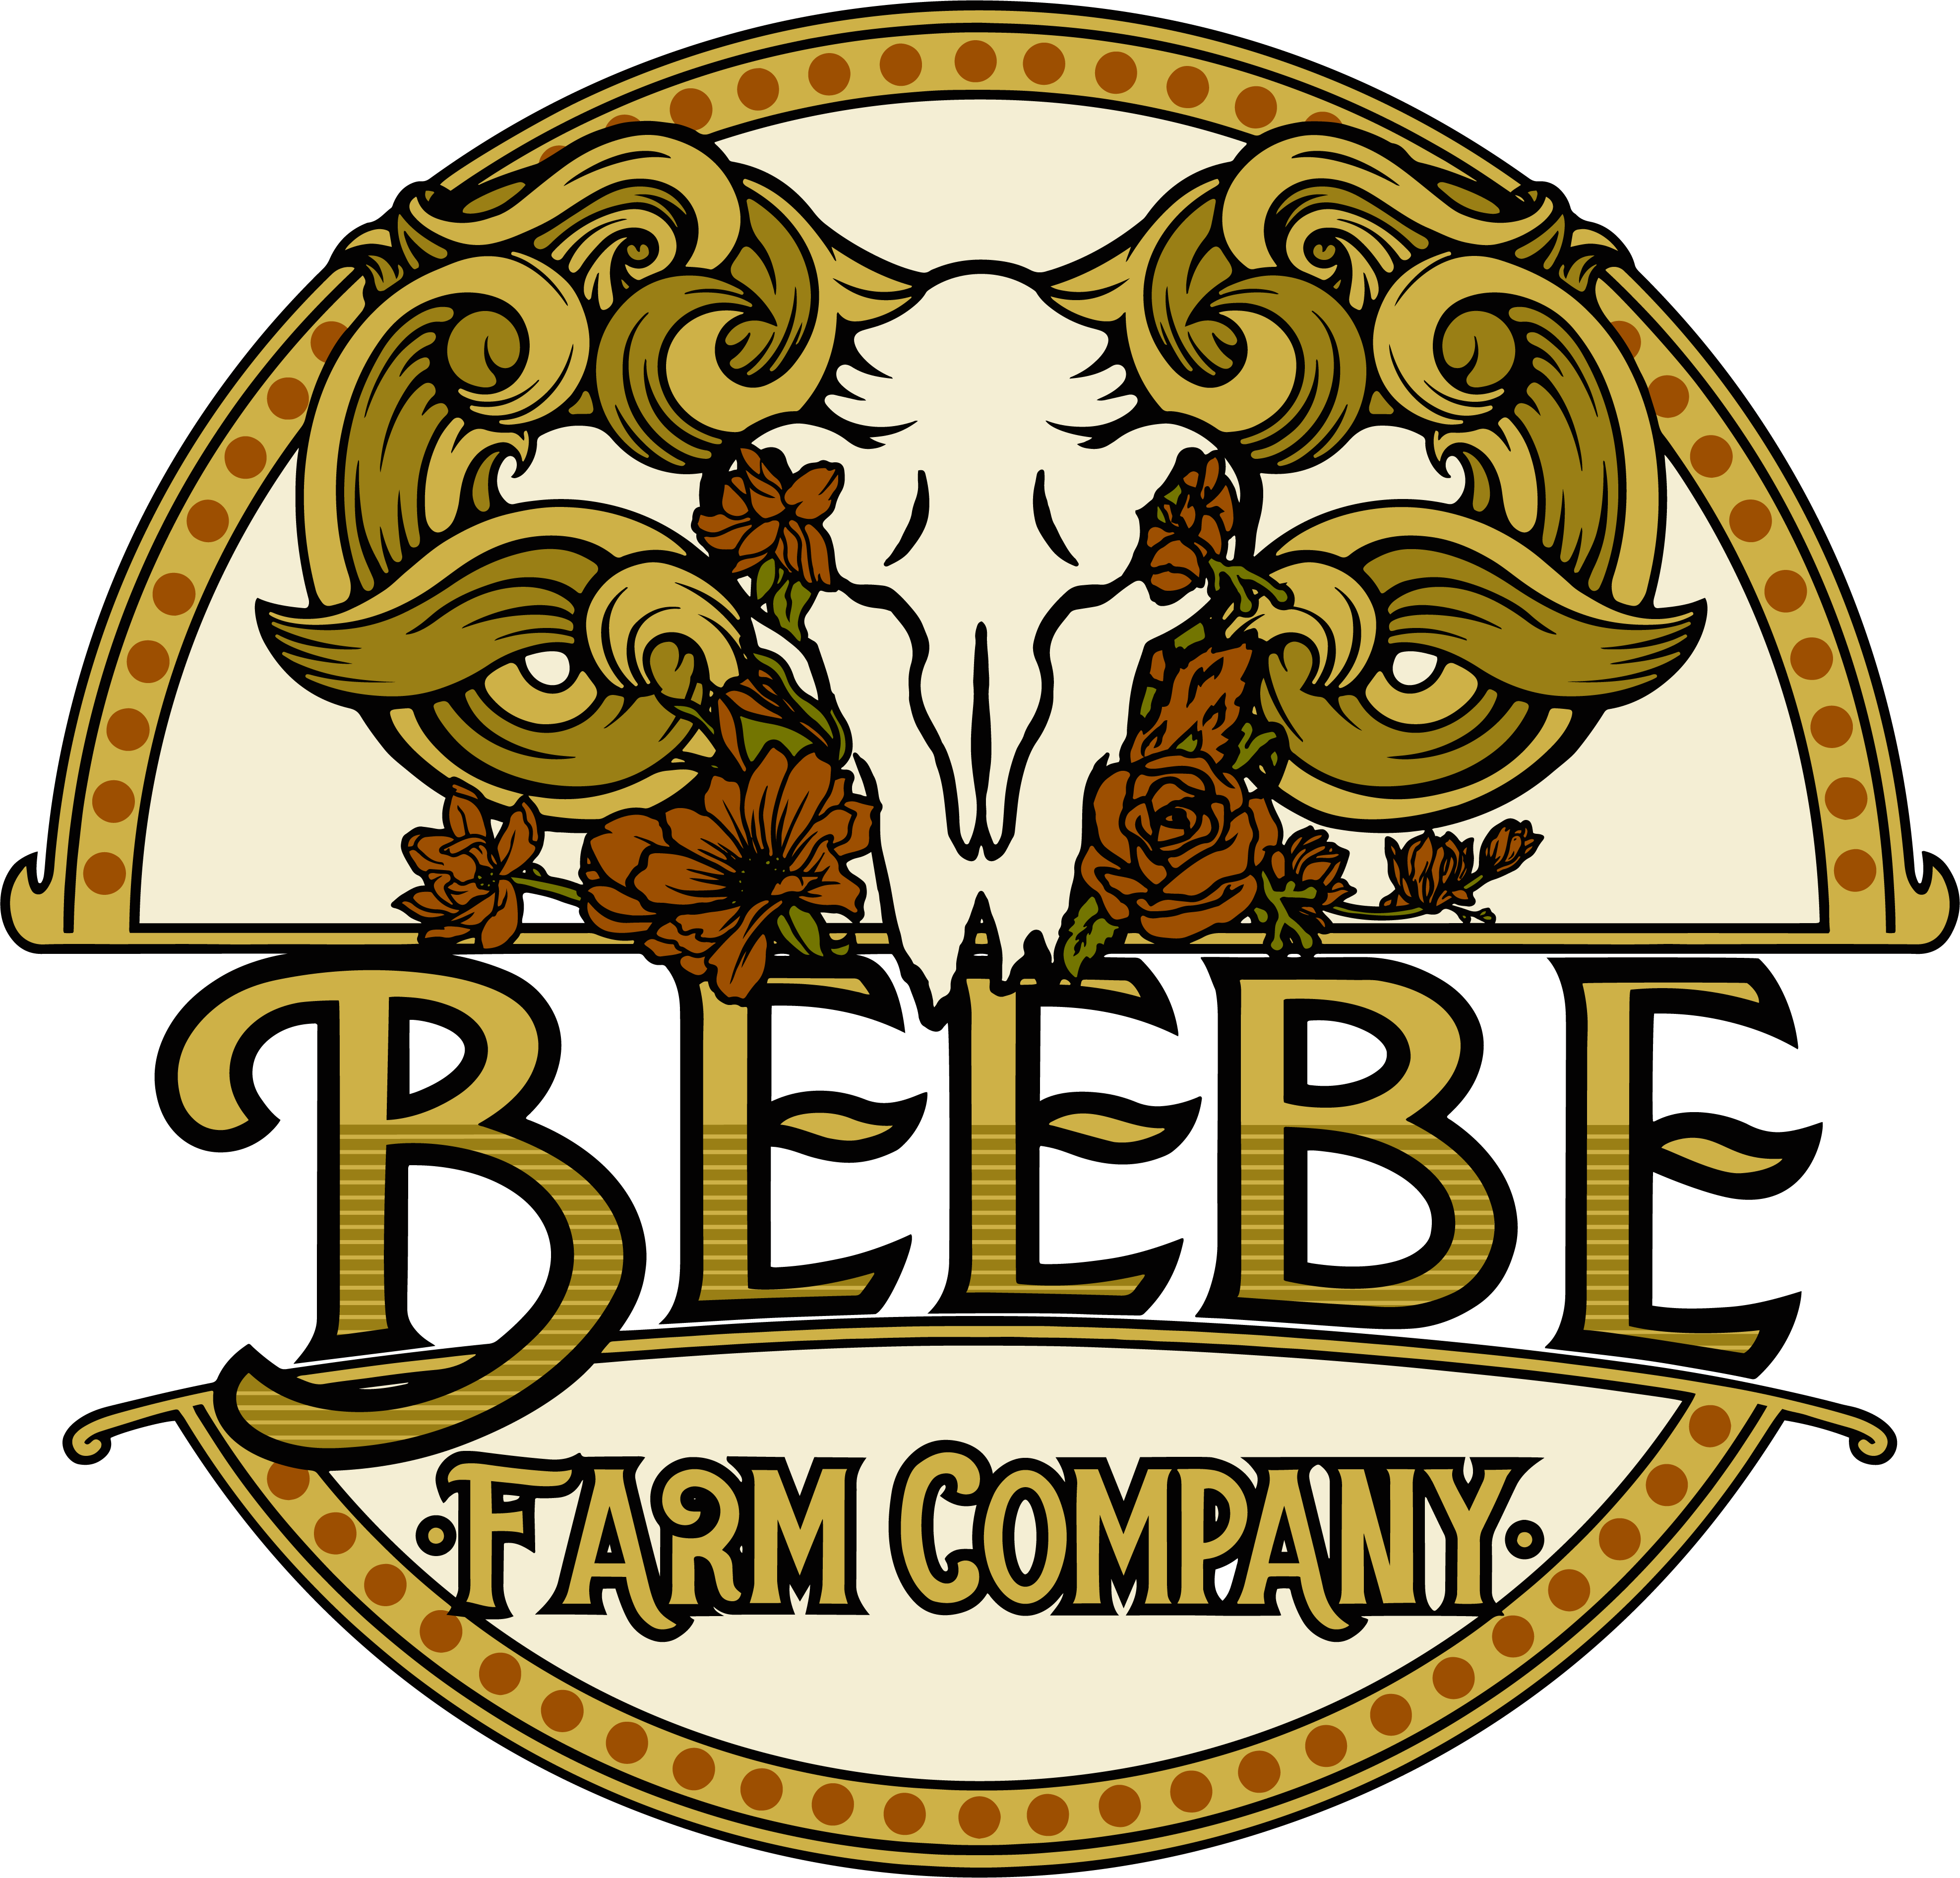 Beebe Farm Company